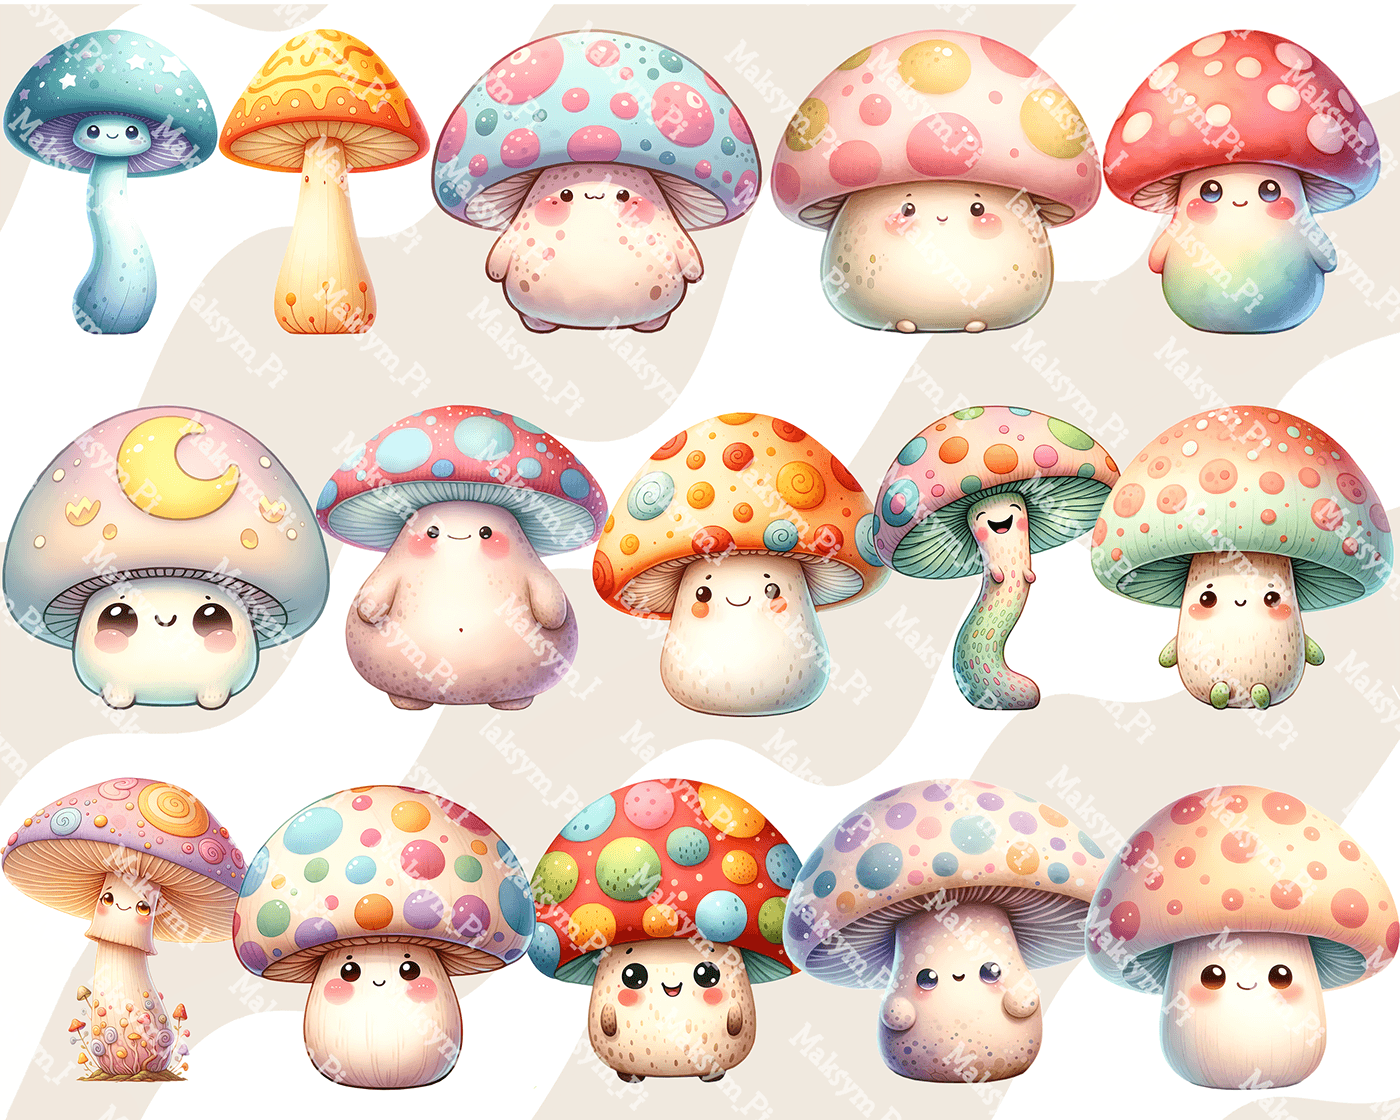 mushroom illustration mushroom clipart mushroom funny mushroom cartoon mushroom house mushroom character Mushroom Cute Mushroom Png mushroom watercolor Mushrooms kawaii